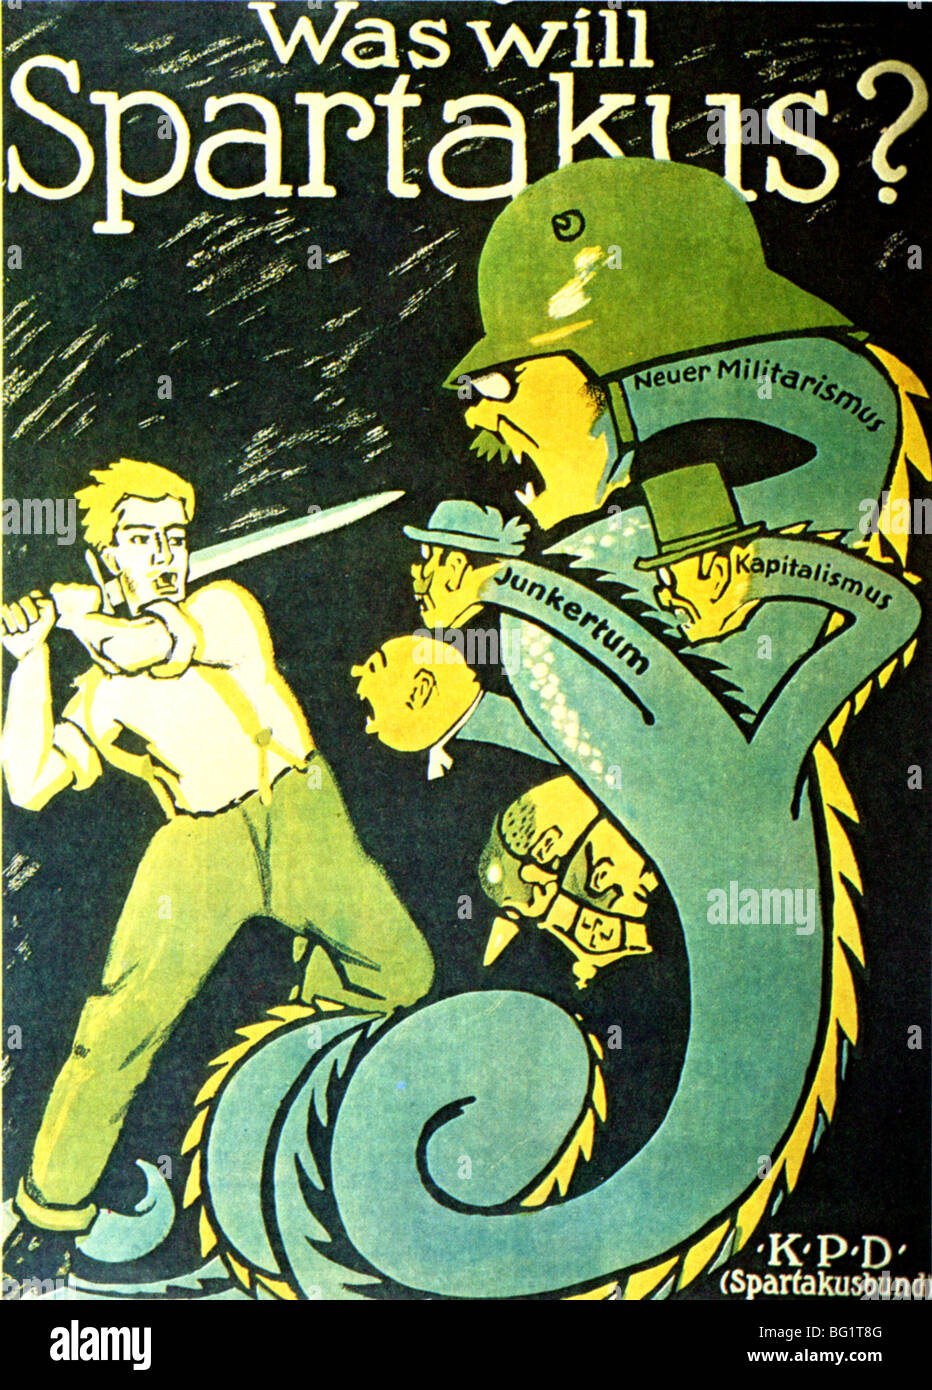 SPARTACUS  LEAGUE 1919 poster.  'What will Spartakus do ?' At lower right the initials KDP - Kommunistische Partei Deutschland. Stock Photo